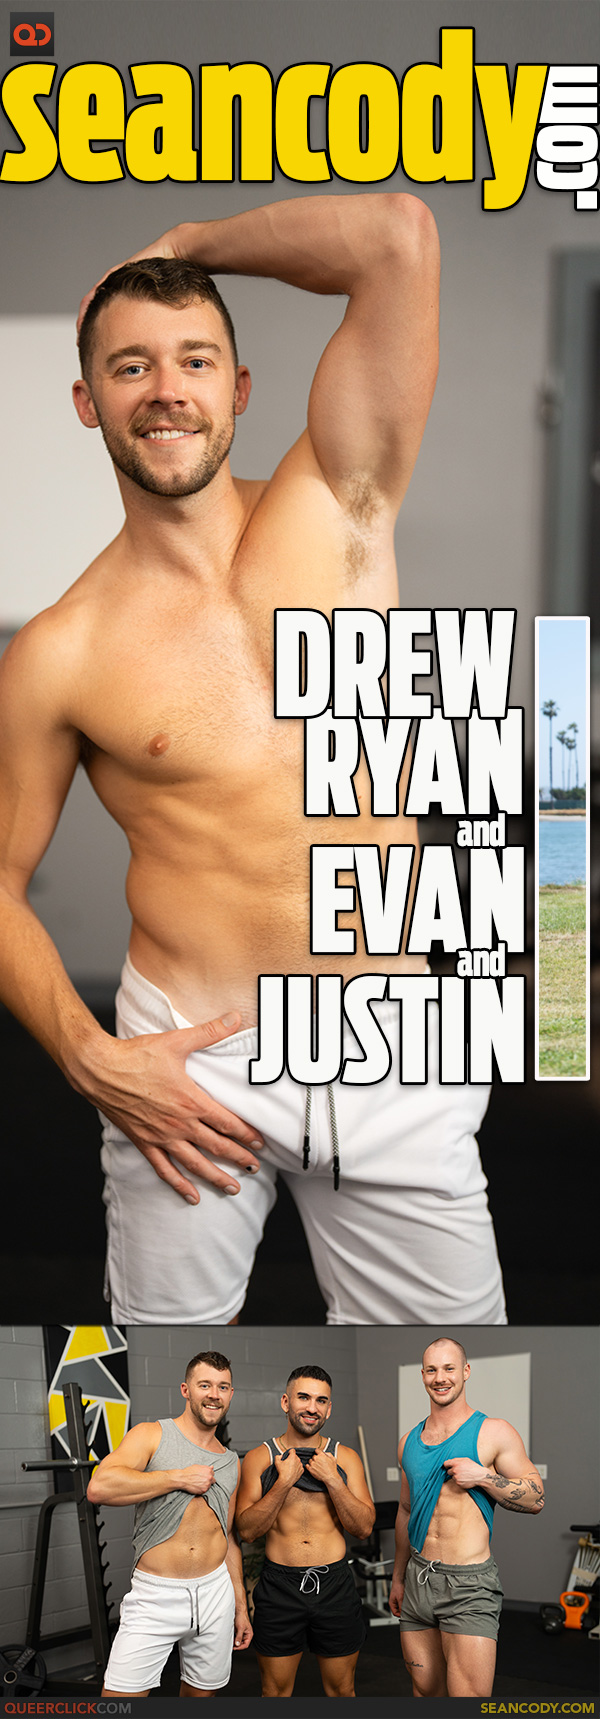 Sean Cody: Drew Ryan, Evan and Justin